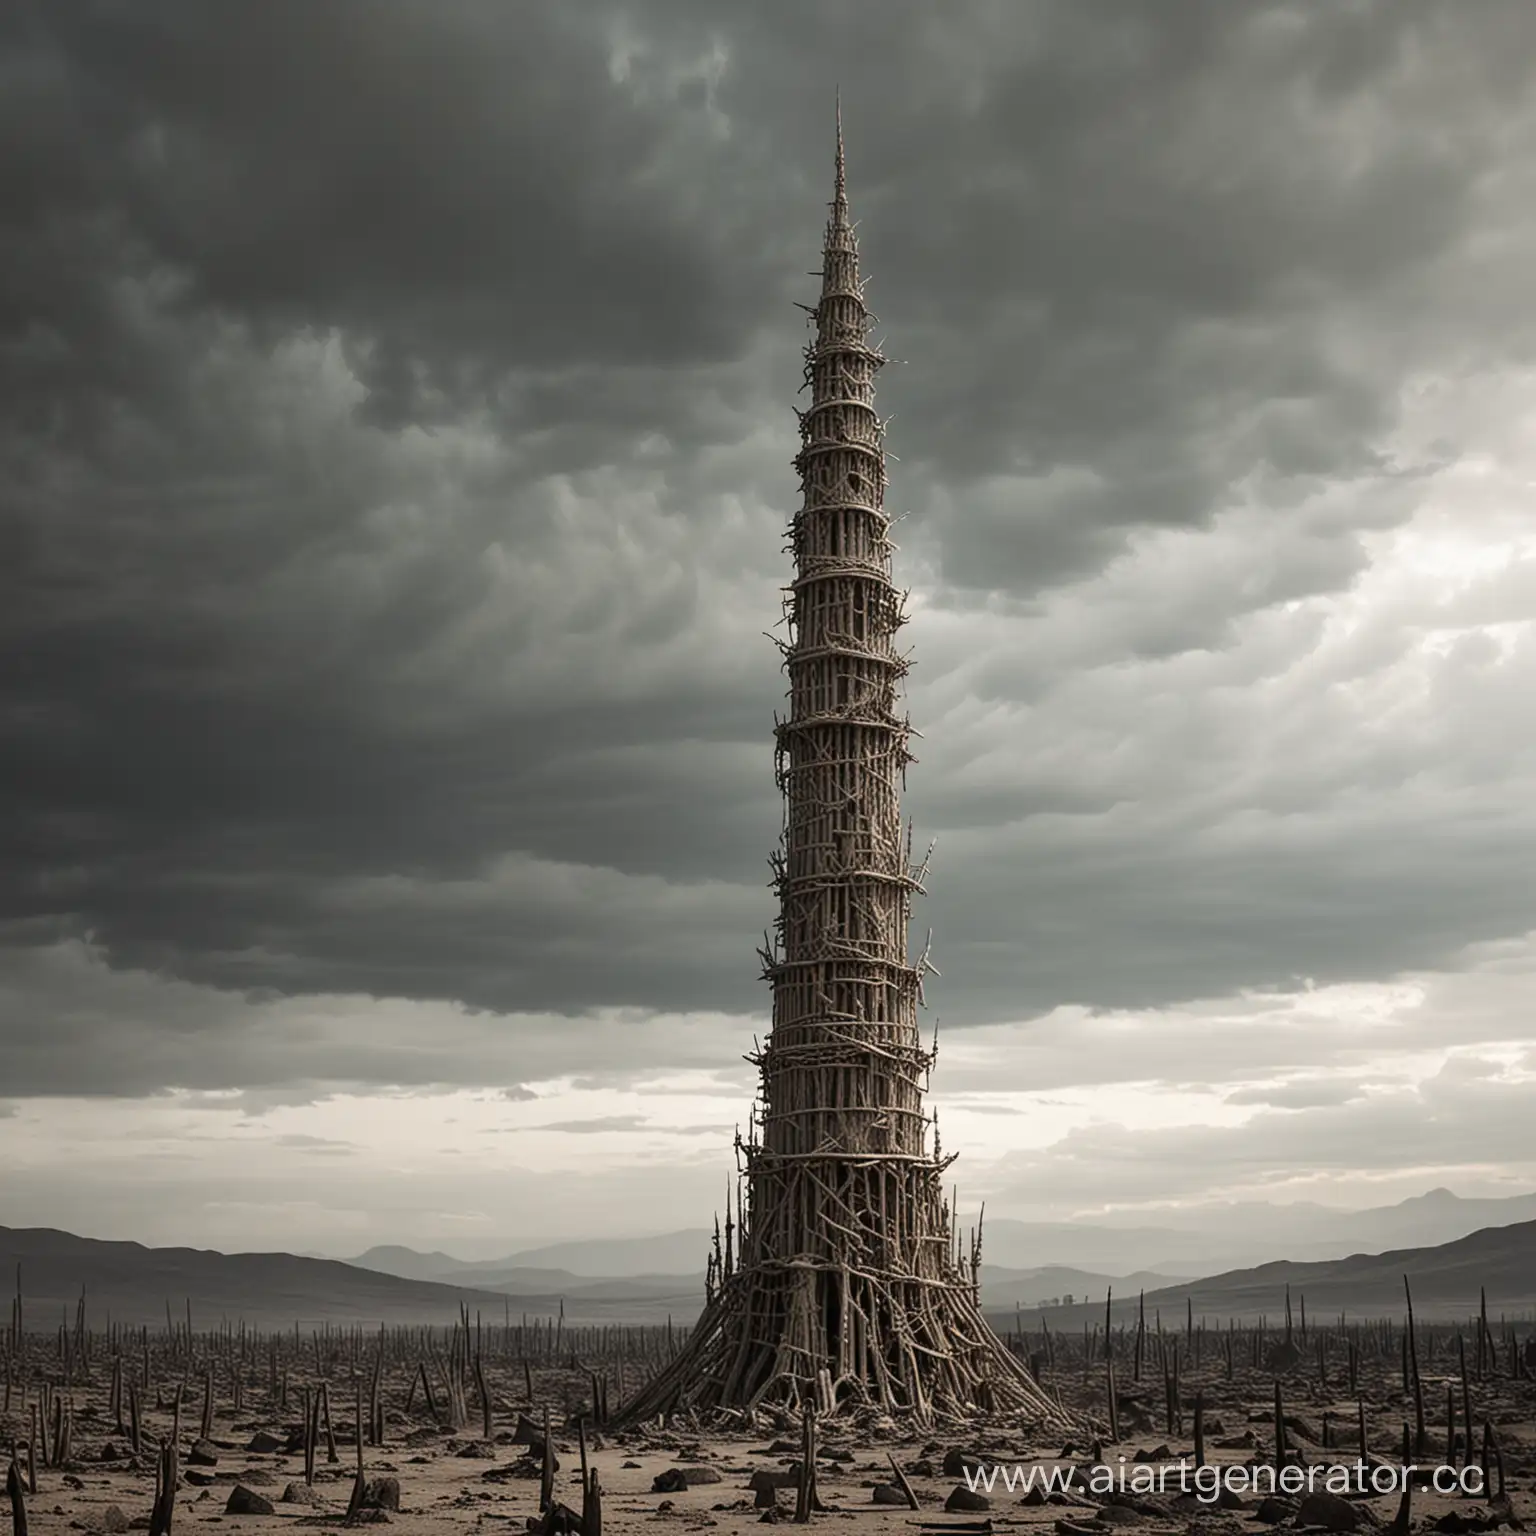 Eerie-Bone-Tower-Reaching-Skyward-in-Ashen-Atmosphere